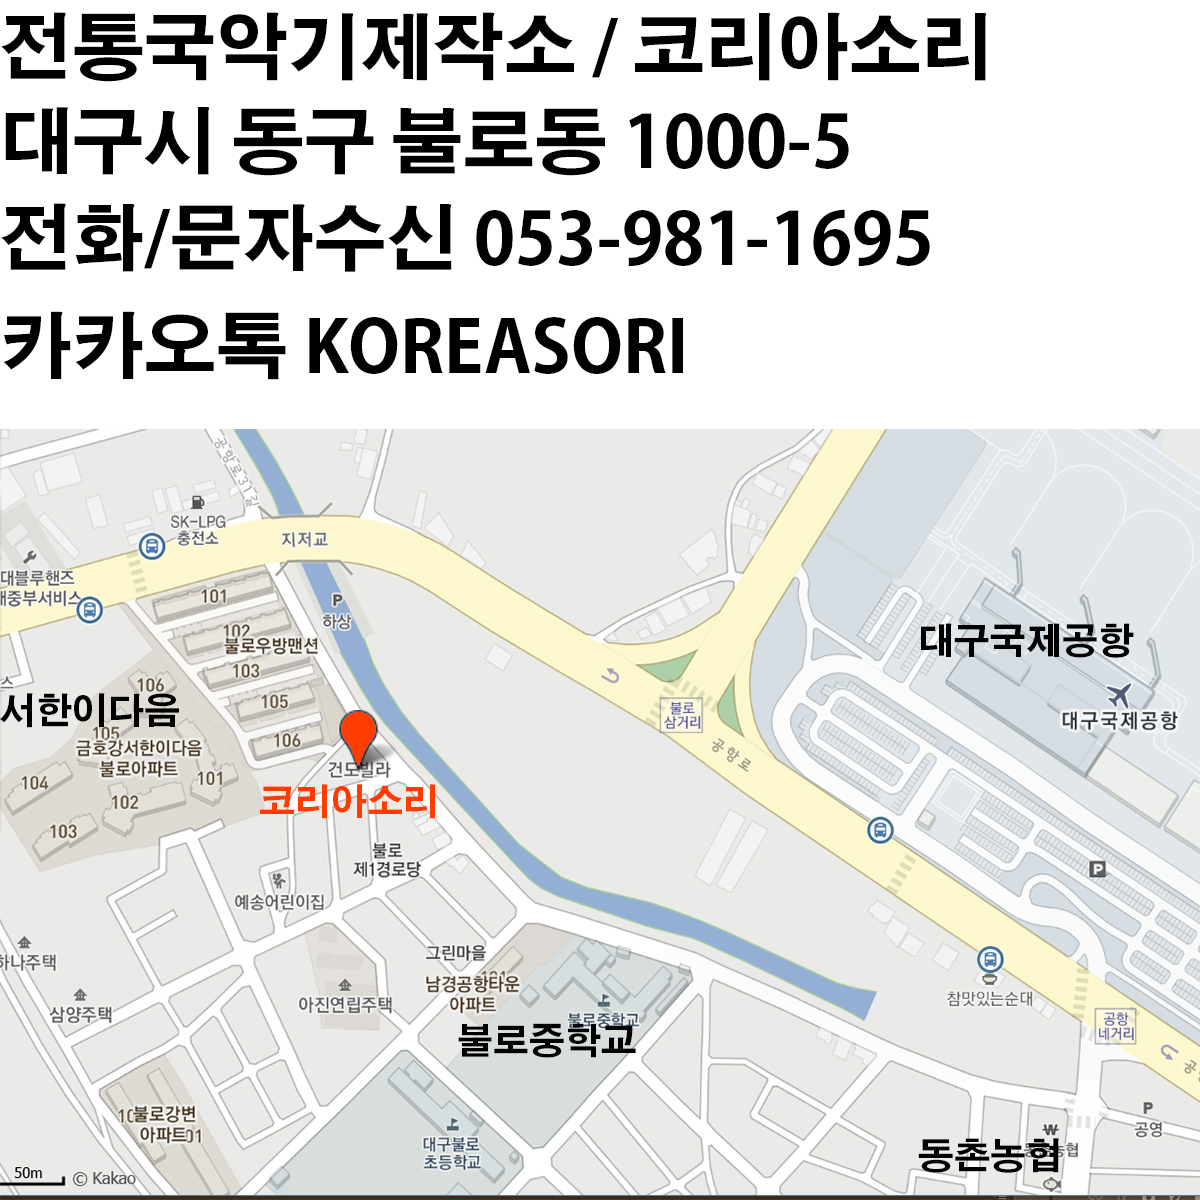 박달공이 대나무 장구궁채 장구채 / SHD-DJA140A